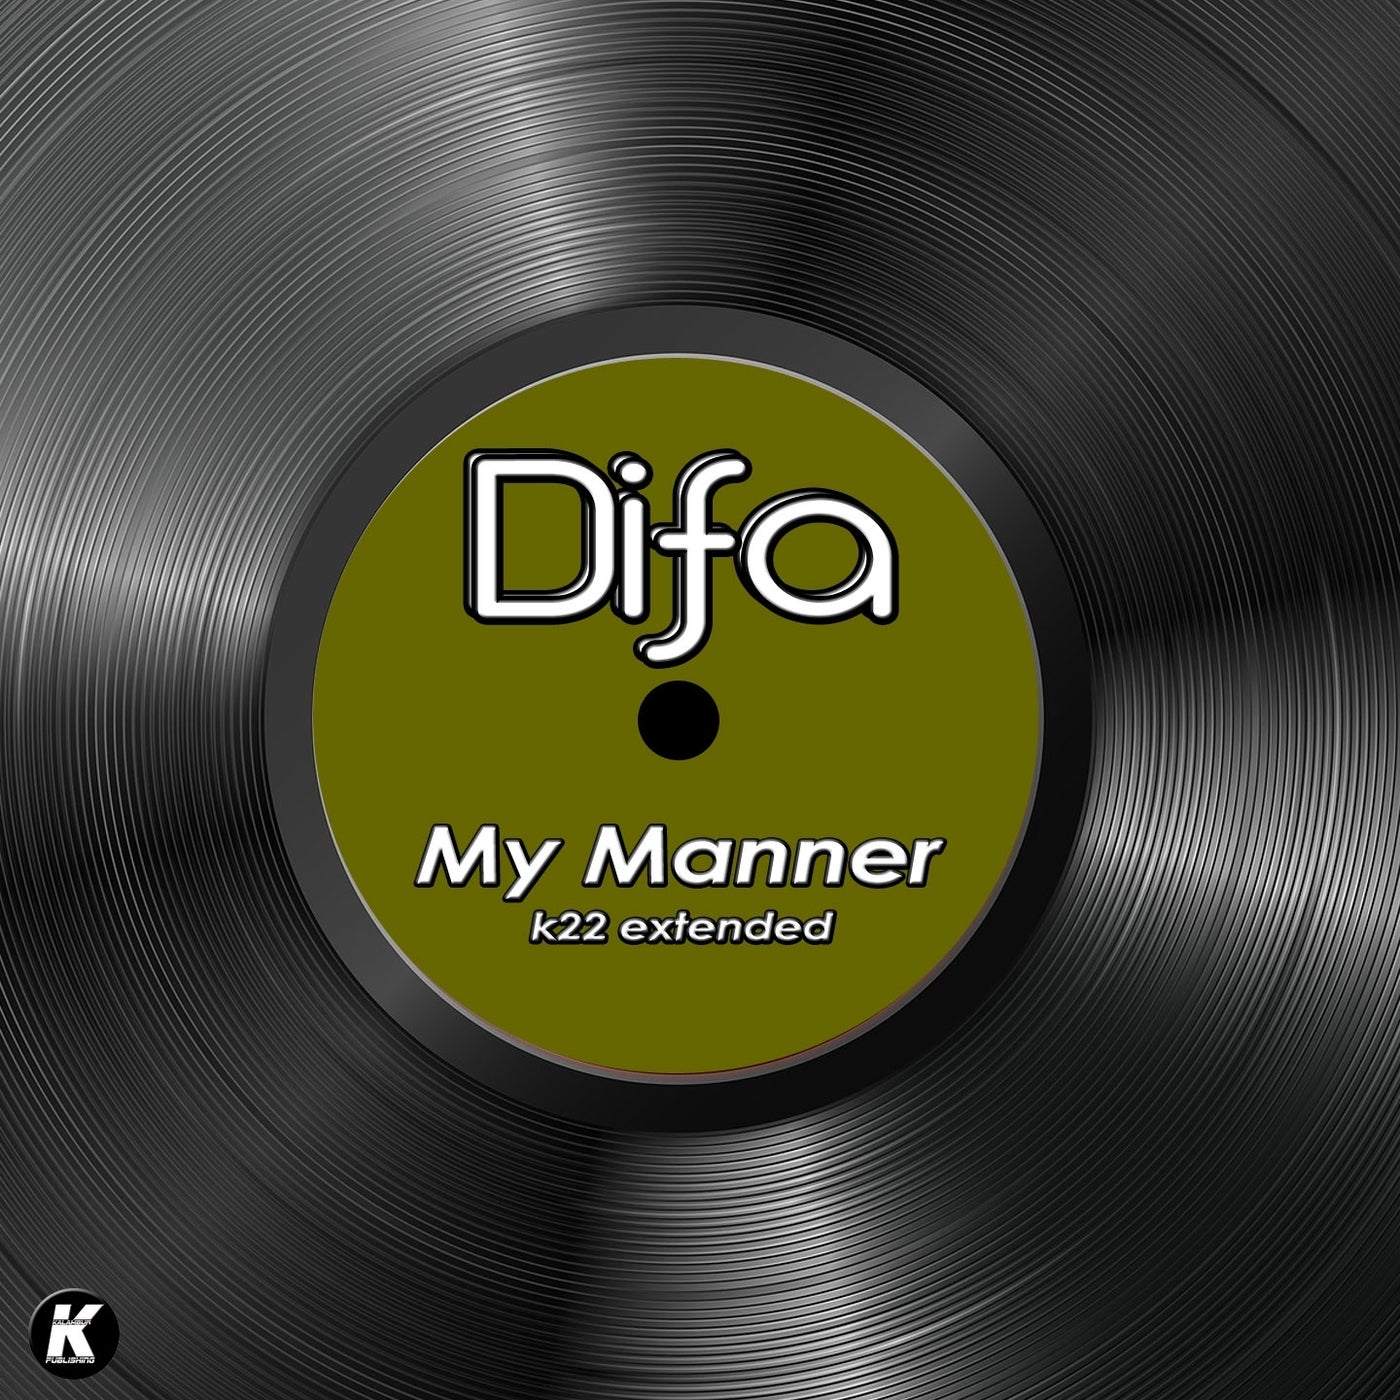 MY MANNER (K22 extended)